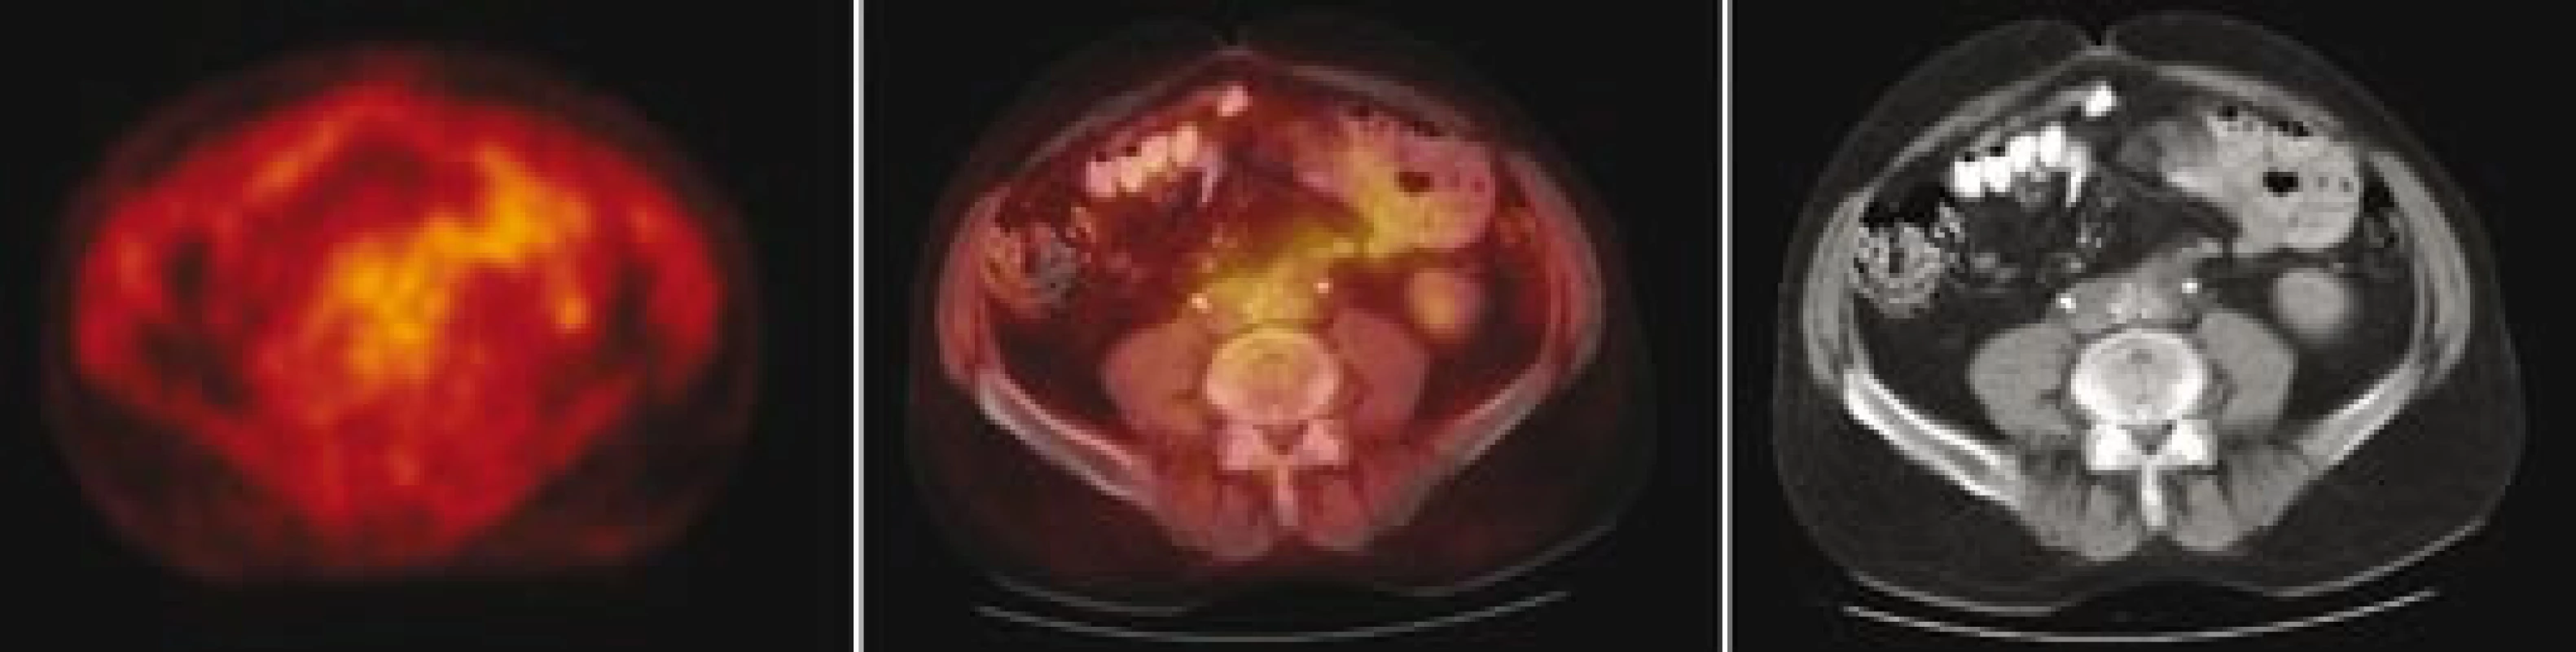 Fúze PET/ CT– transverzální řezy ve výši bifurkace aorty: vlevo obraz PET v barevné škále hot body, uprostřed fúzovaný obraz 50 % PET a 50 % CT, vpravo CT. Na PET patrné vymizení hypermetabolizmu glukózy v měkkotkáňovém infiltrátu periaortálně, na CT patrné zmenšení rozsahu retroperitoneálního infiltrátu. Stenty v obou ledvinách, aktivita PET jen v ledvinách a ureterech – odpovídá vylučování radiofarmaka.